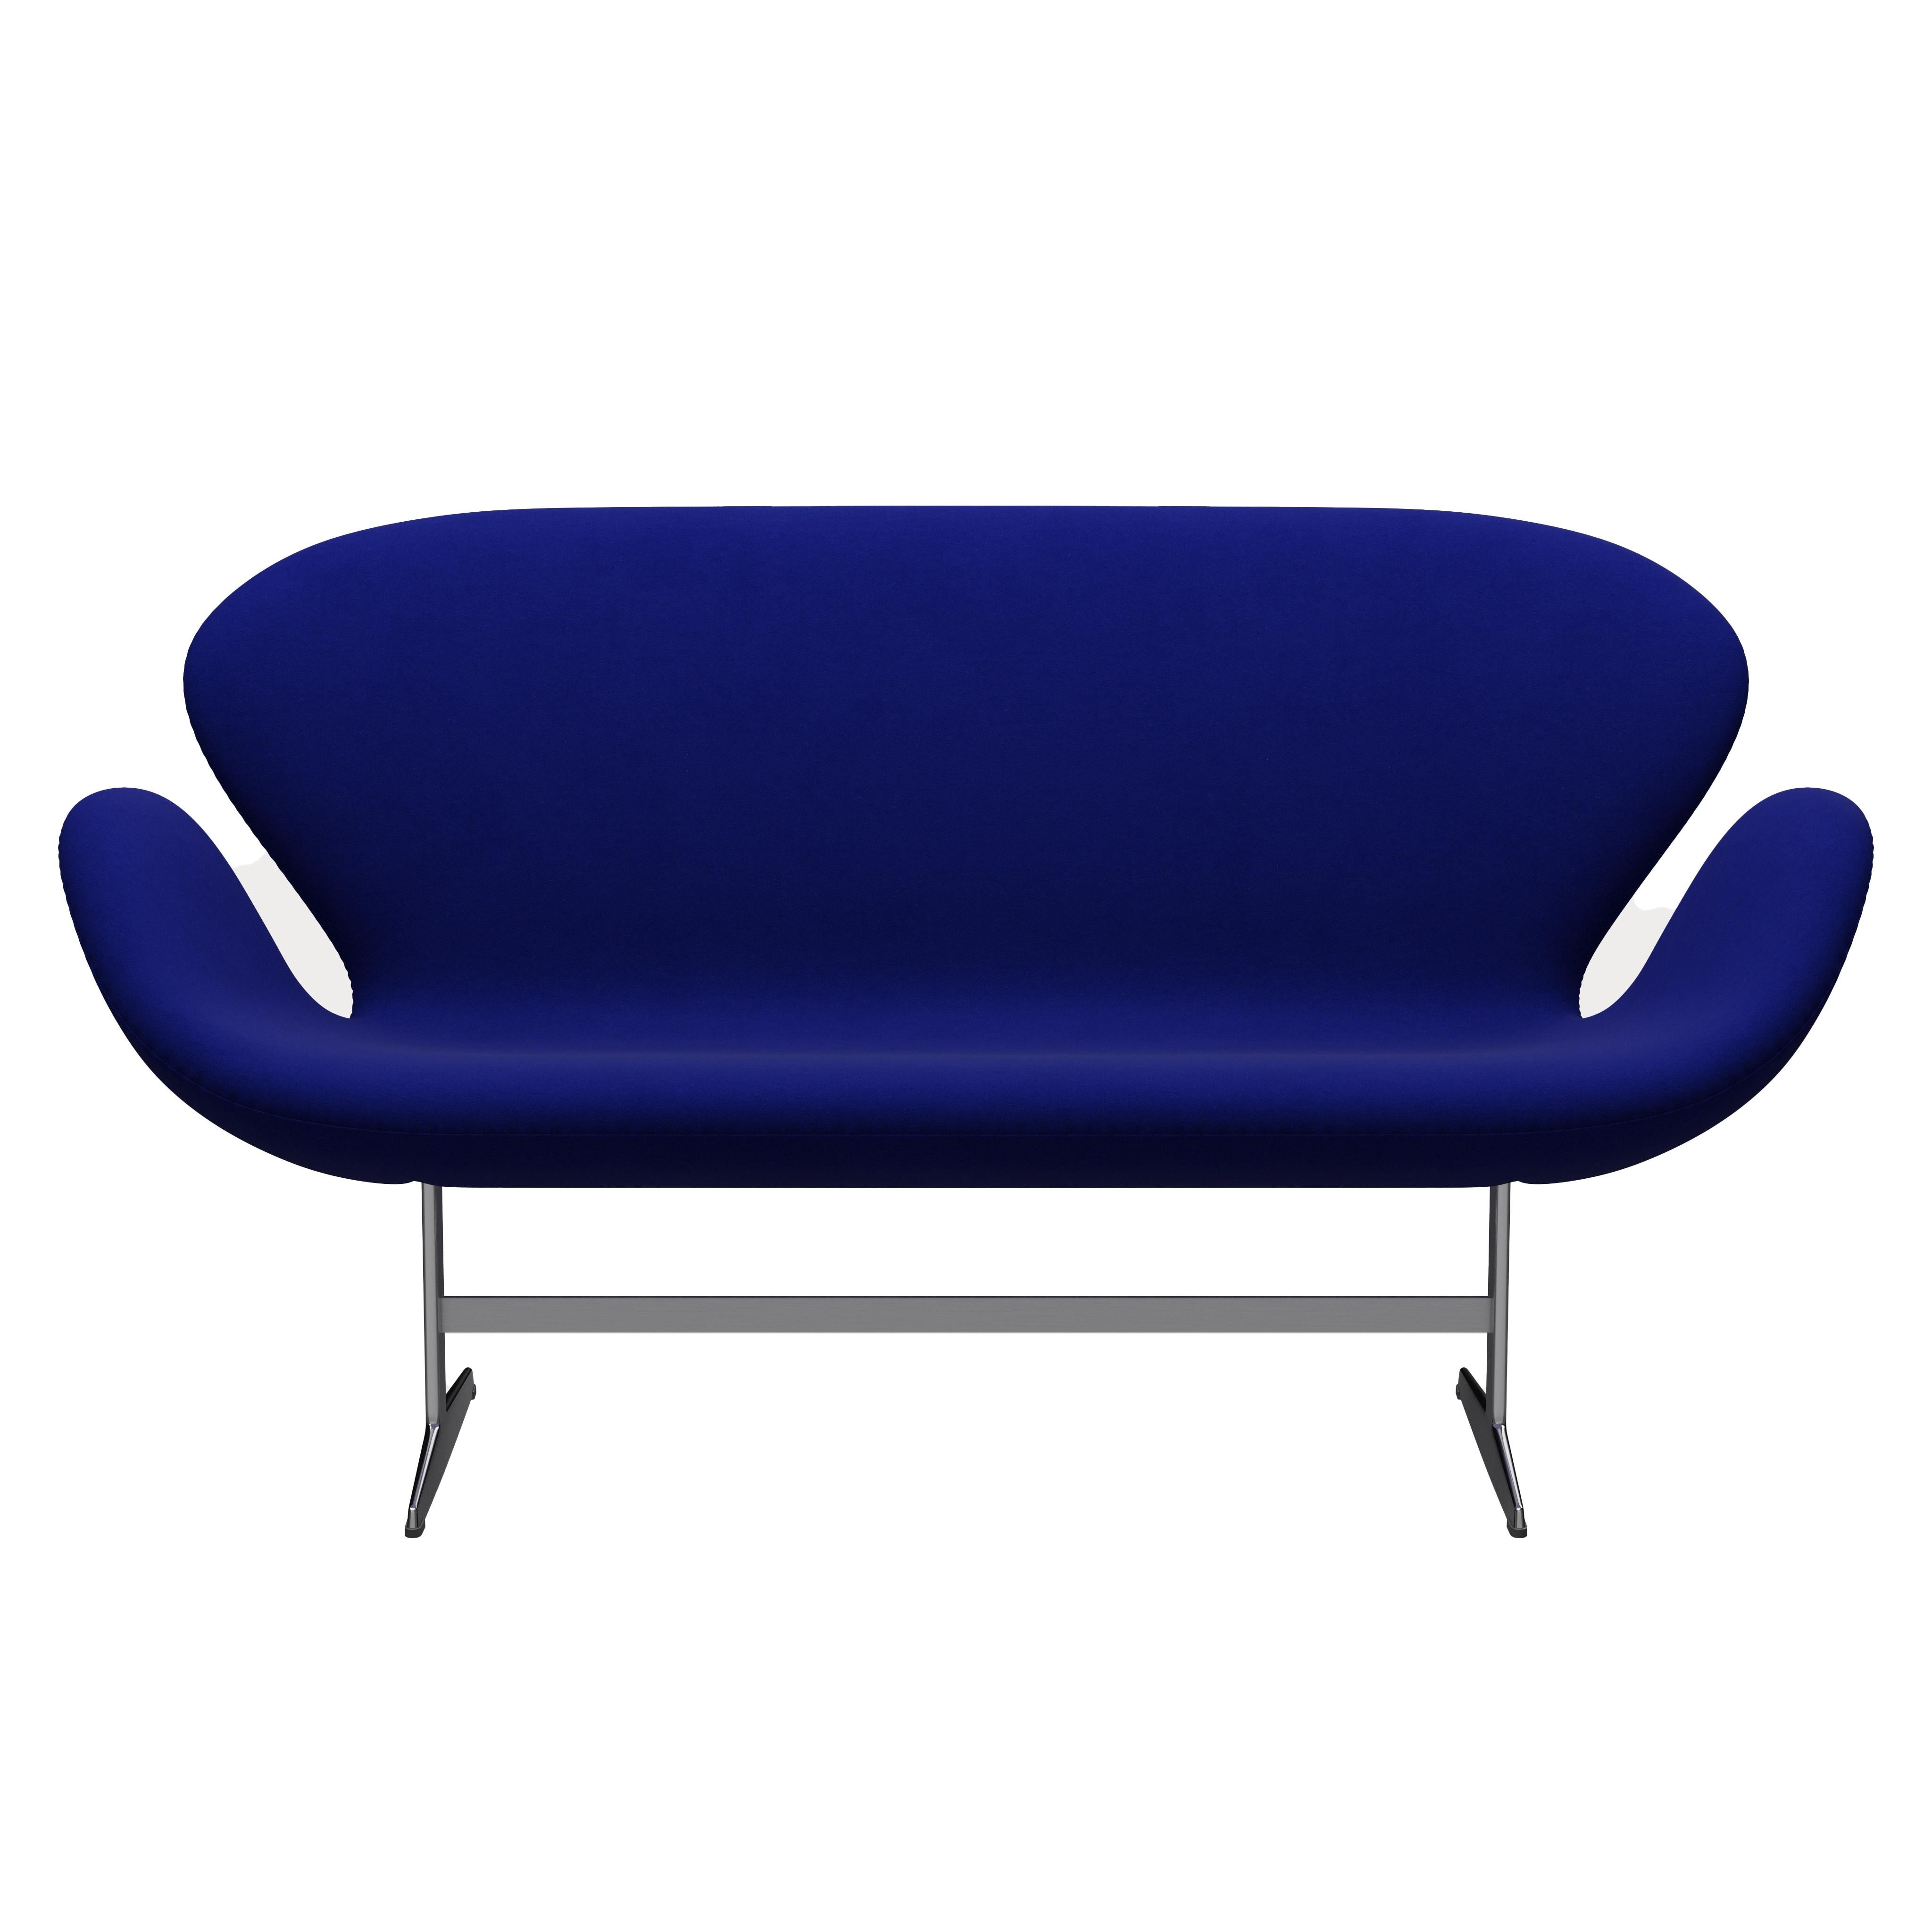 Arne Jacobsen 'Swan' Sofa for Fritz Hansen in Fabric Upholstery (Cat. 3) For Sale 8